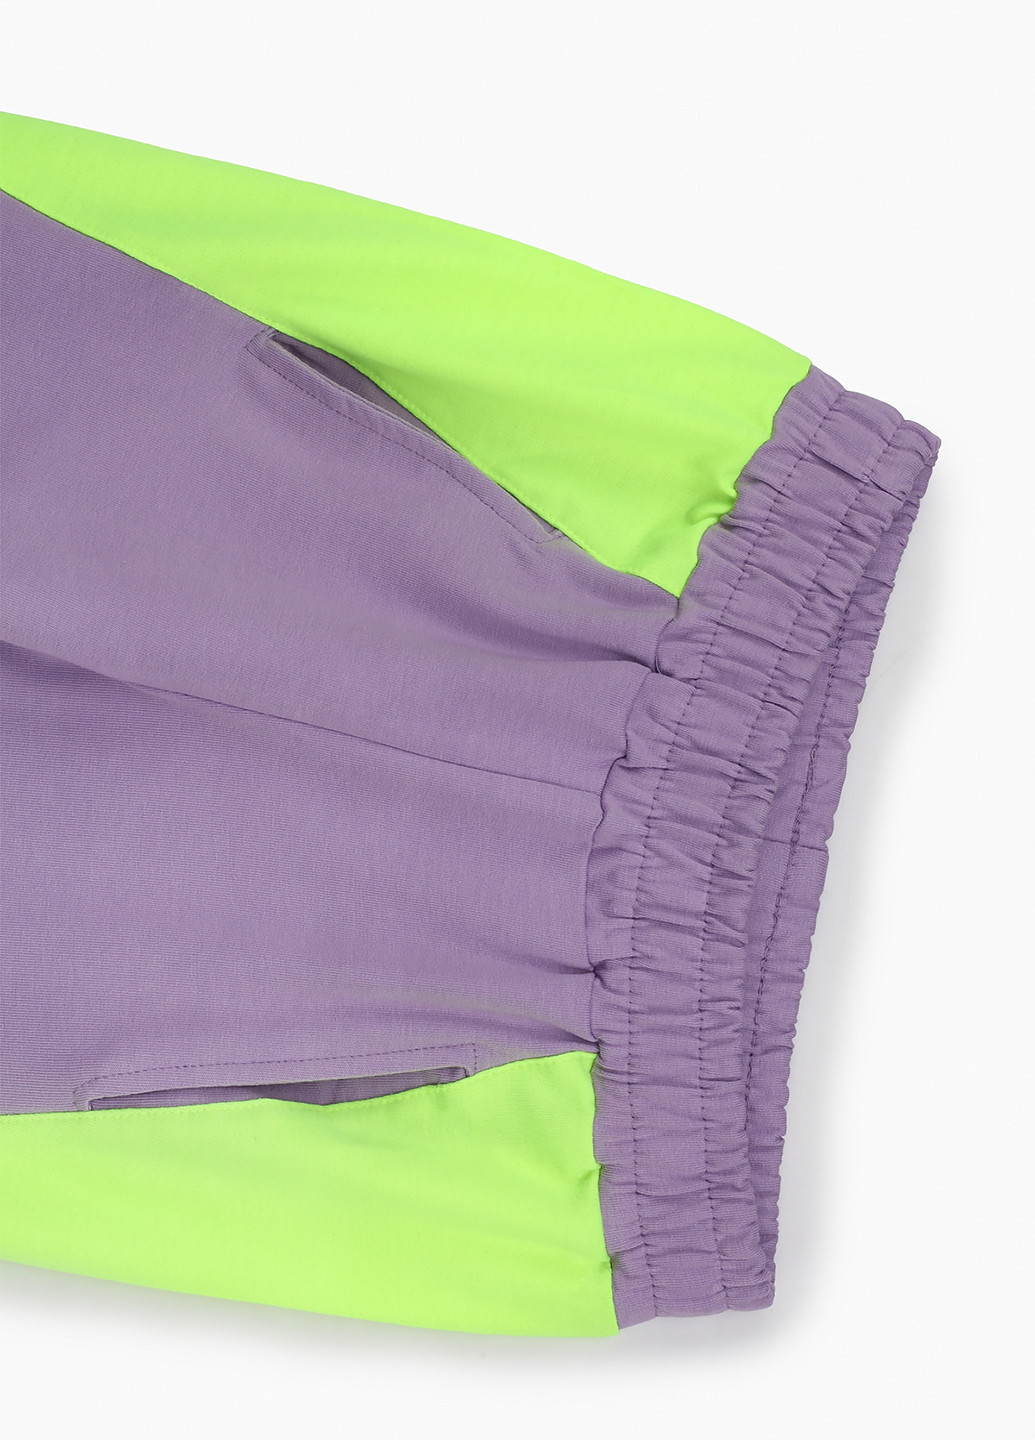 Фиолетовый демисезонный костюм (толстовка, брюки) брючный Toontoy